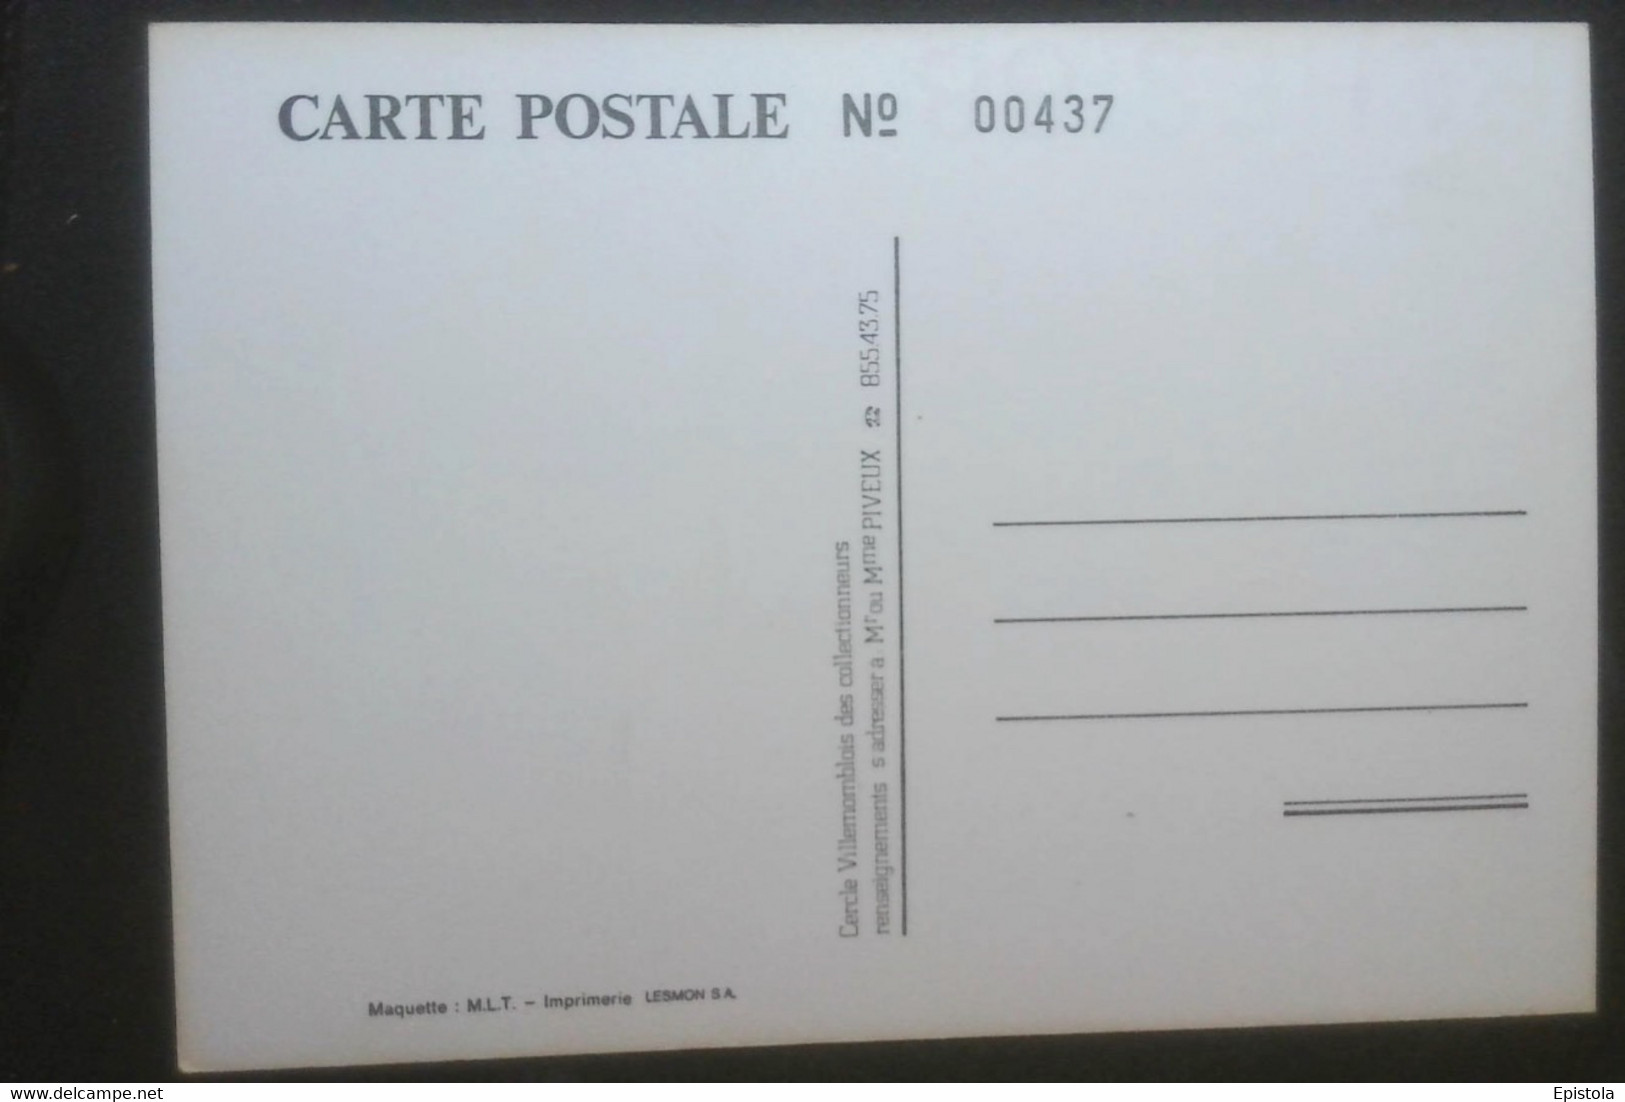 ►  1er BOURSE SALON De La CARTE  POSTALE -  VILLEMOMBLE 1983 (Tirage Limité) - Bourses & Salons De Collections